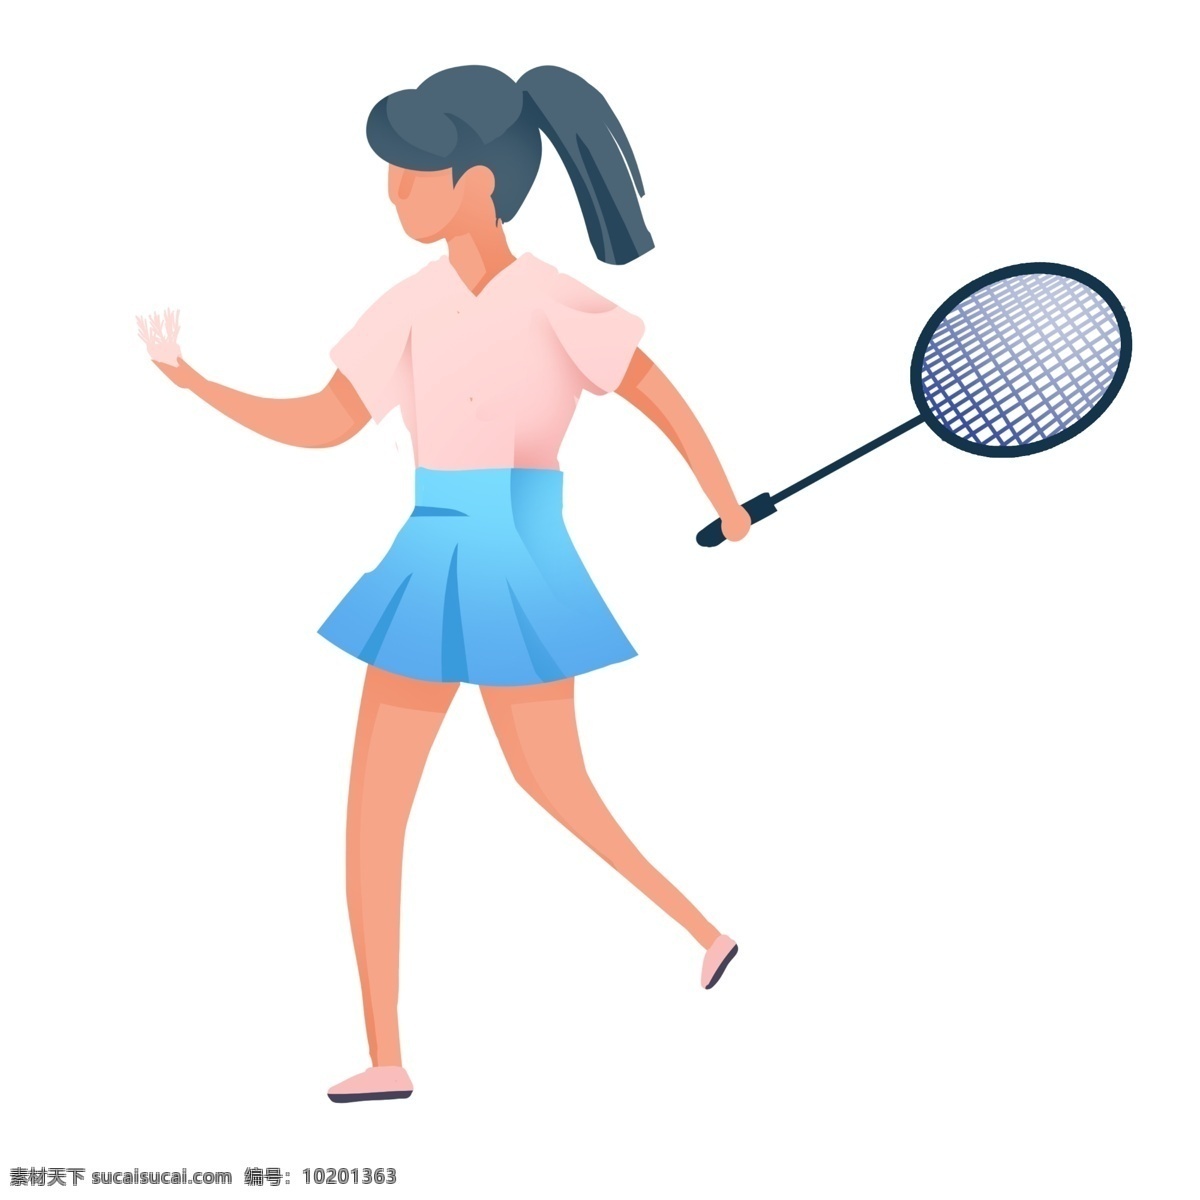 打羽毛球女孩 扁平化 运动锻炼 打羽毛球